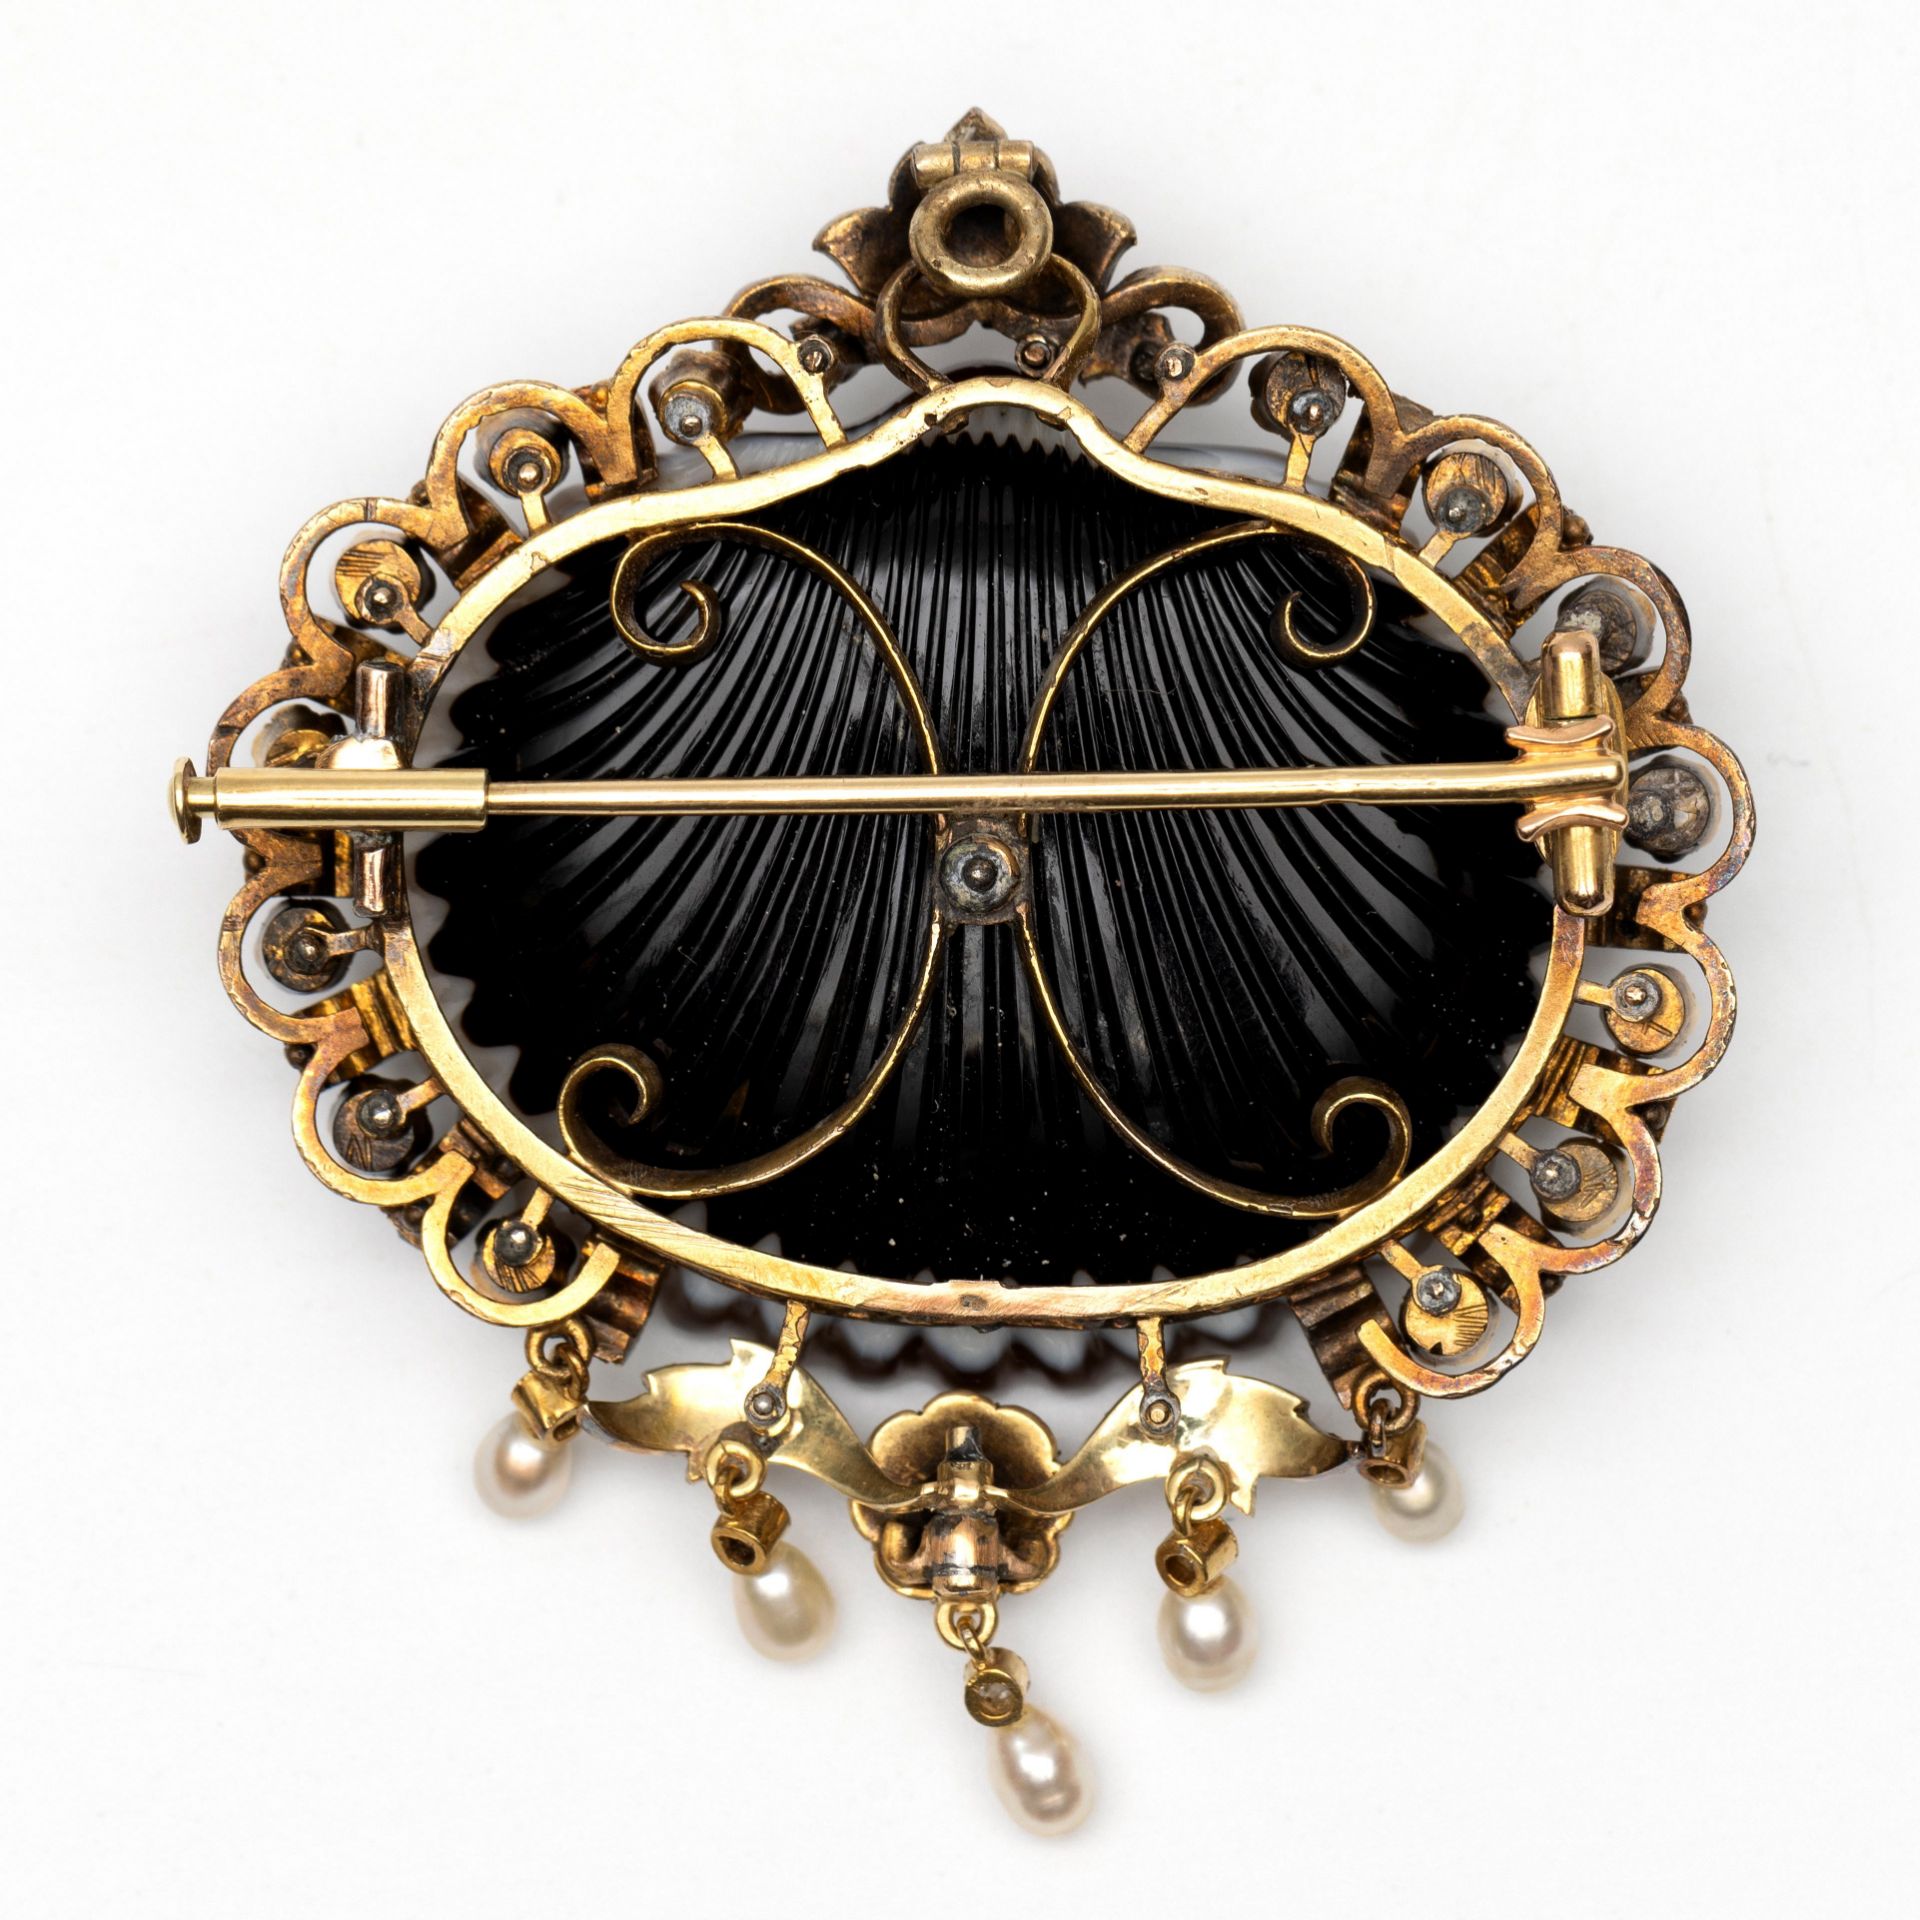 Beneden wettelijk gehalte gouden broche, tevens hanger in de vorm van een schelp, 19e eeuw. - Image 2 of 2